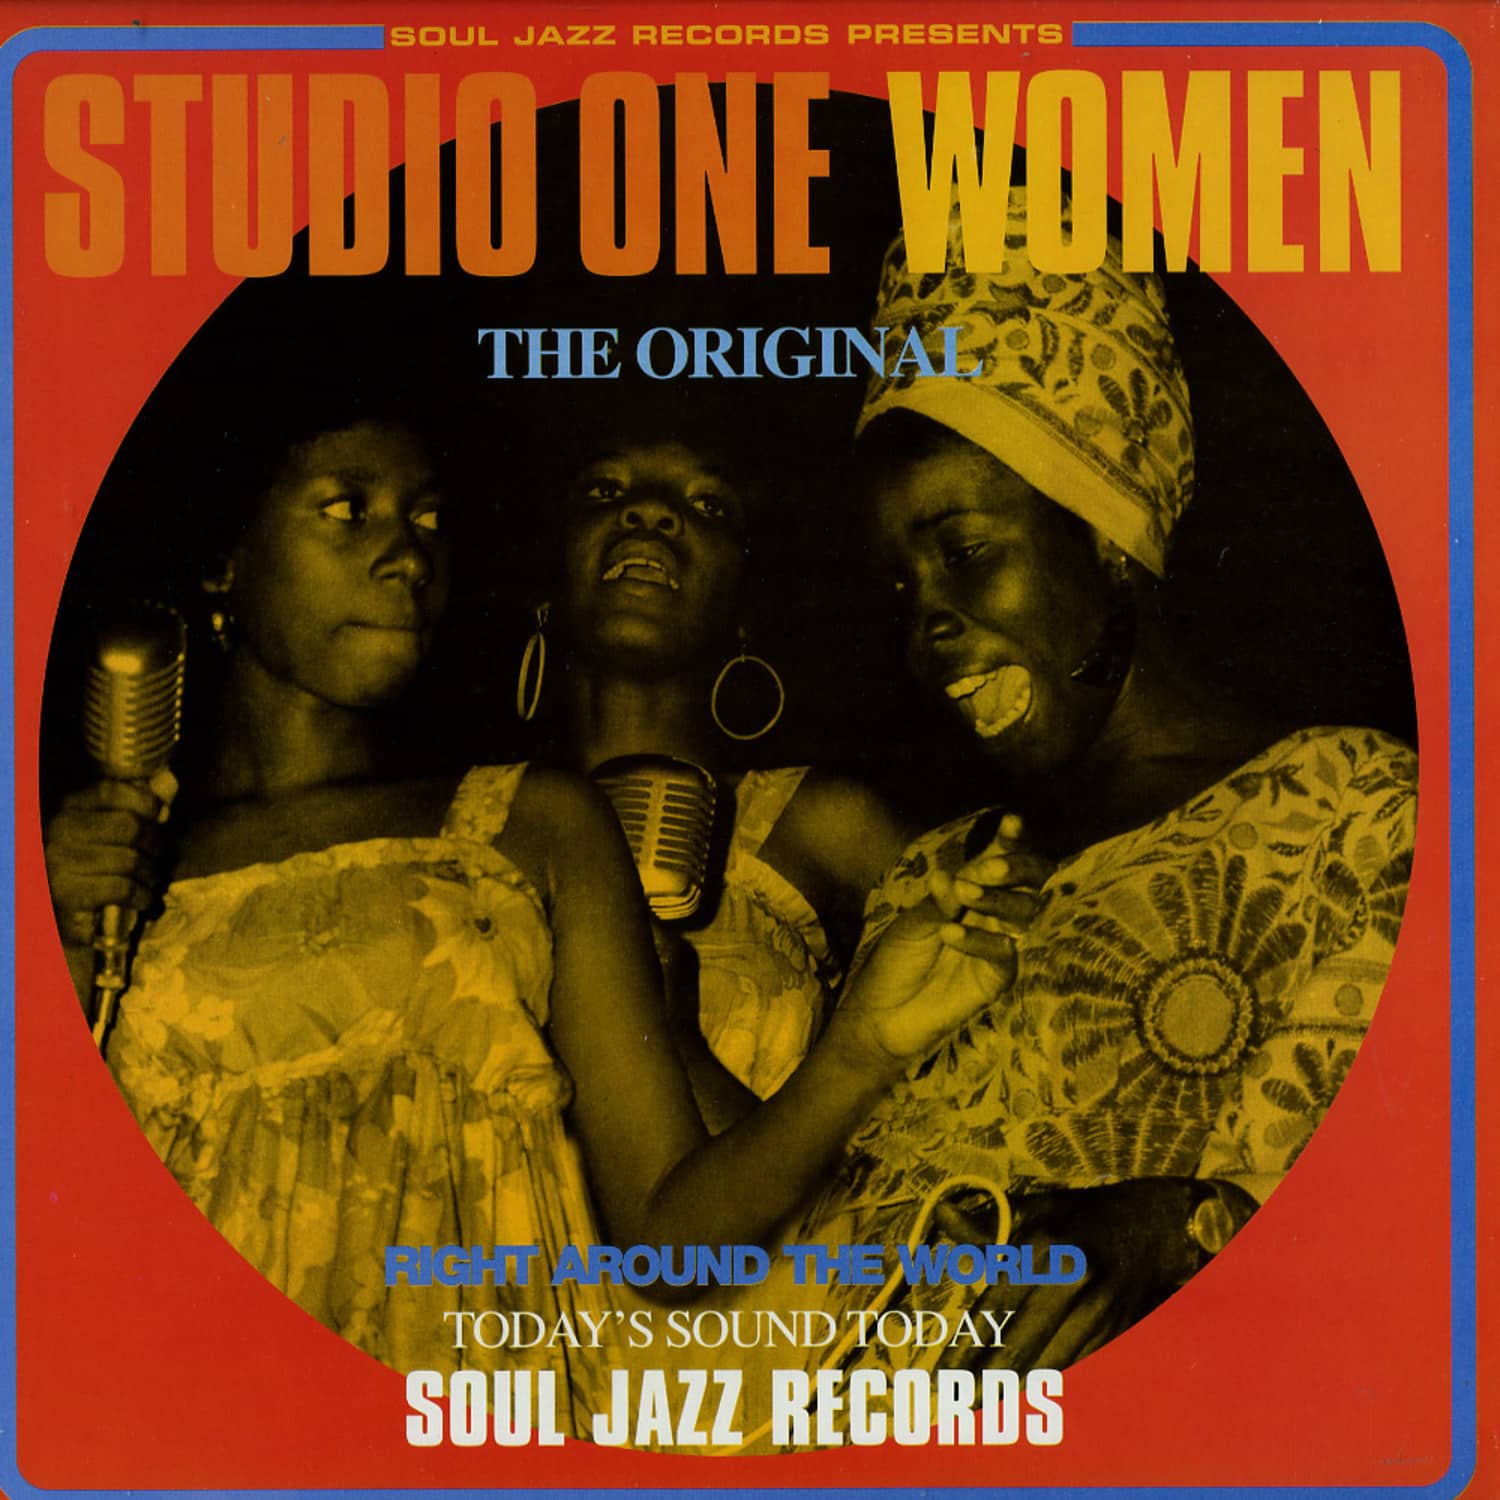 Various Artists - STUDIO ONE WOMEN 